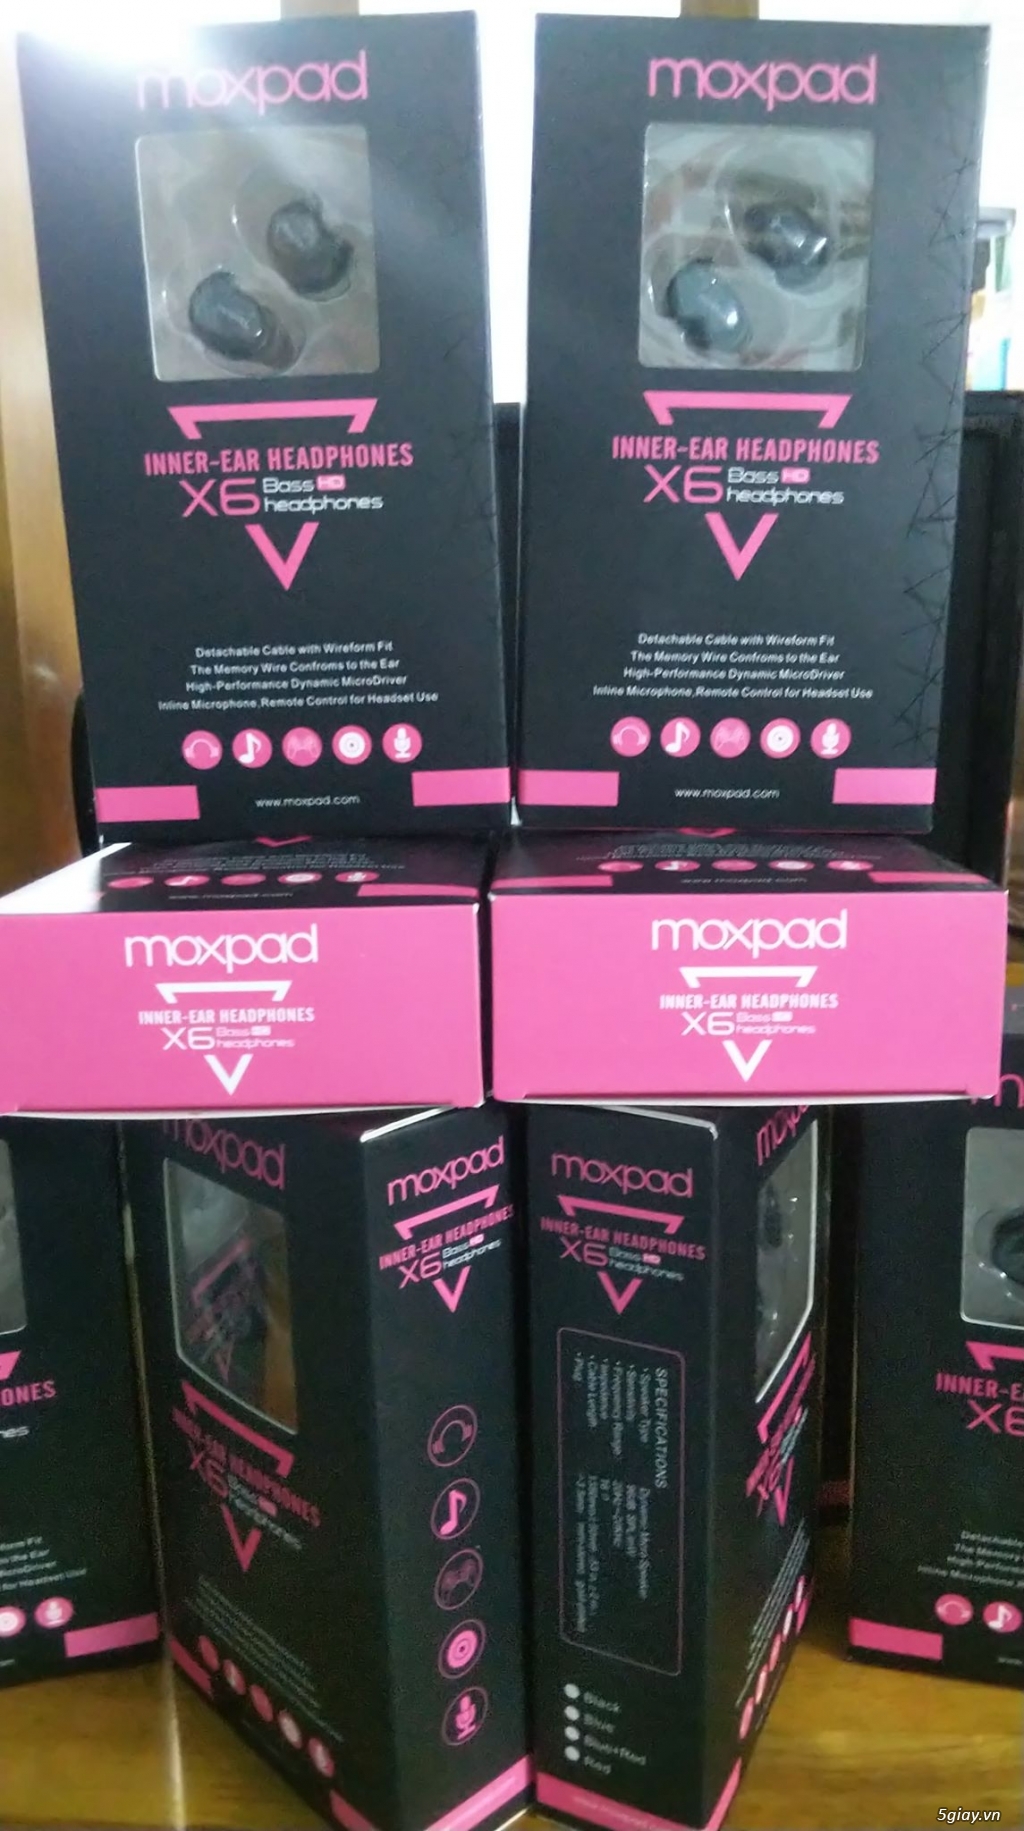 Moxpad X6 - Ngọt ngào và tình cảm - Tai nghe đáng sở hữu cho người mới - 3